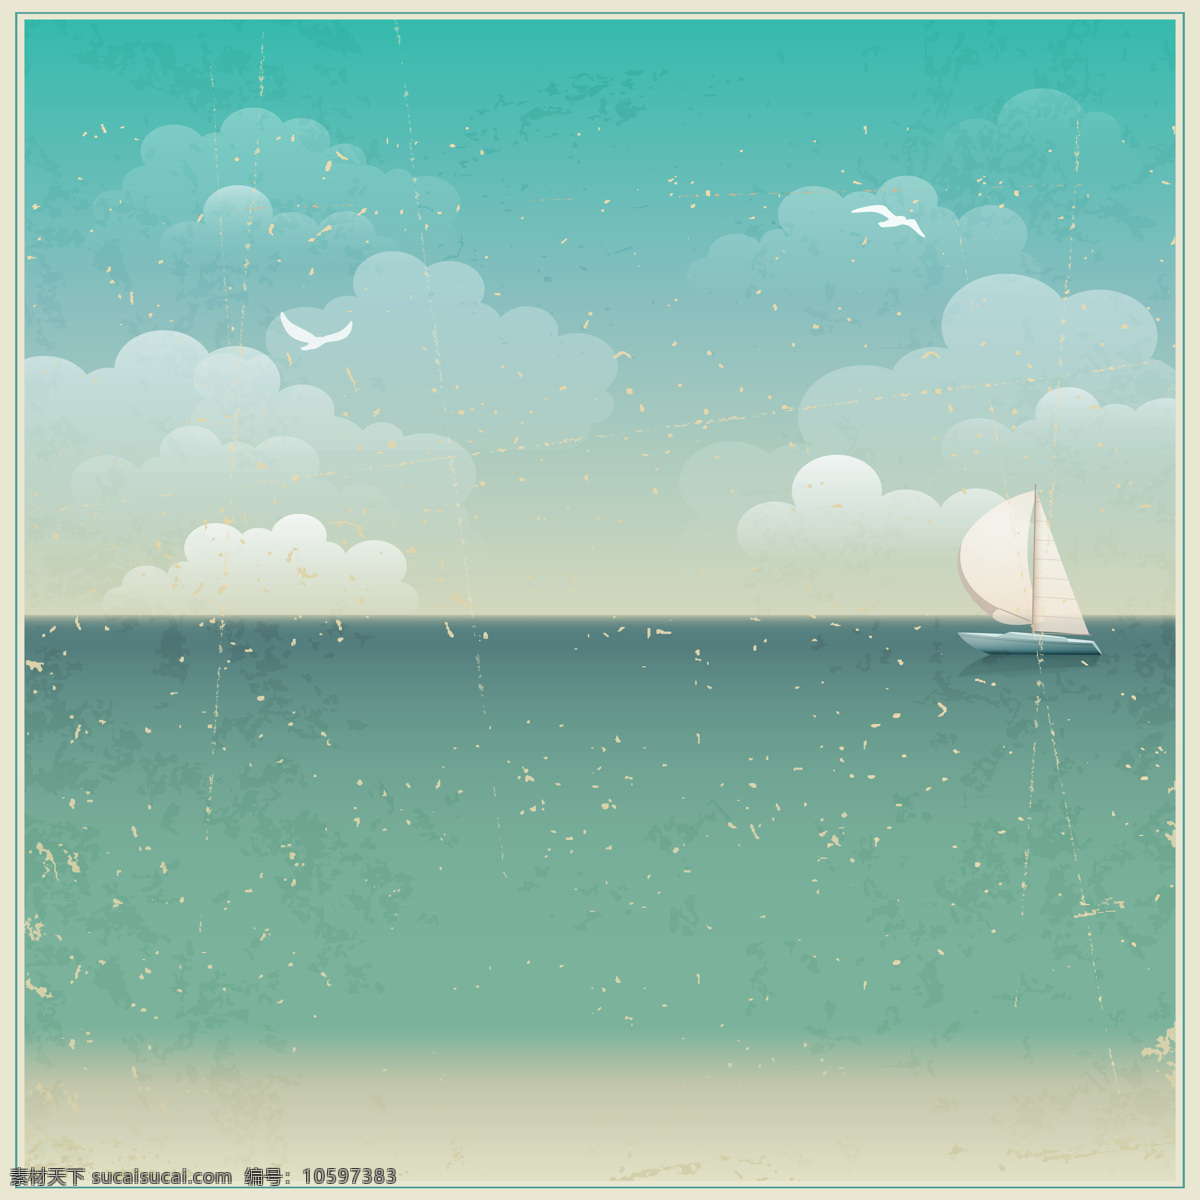 夏天 清新 海滩 青色 简易 背景 帆船